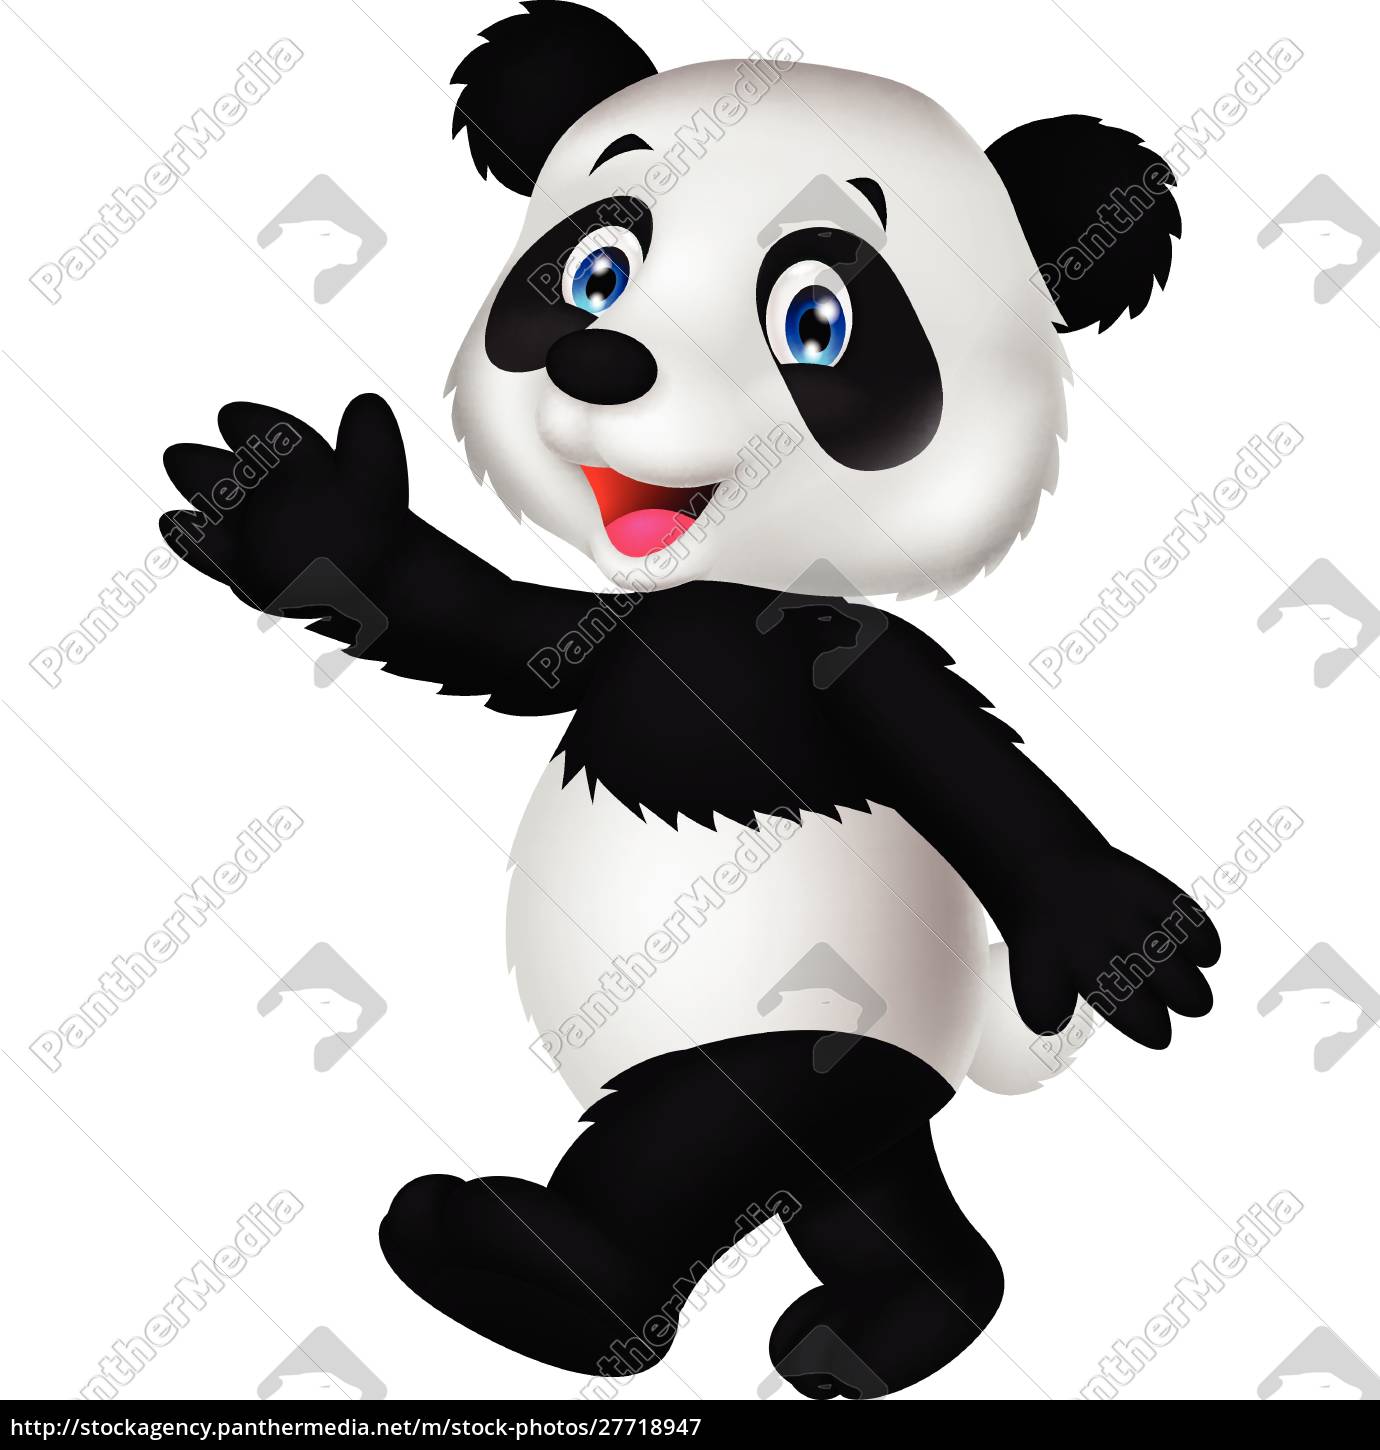 Desenho animado panda fofo acenando com a mão - Stockphoto #27718947